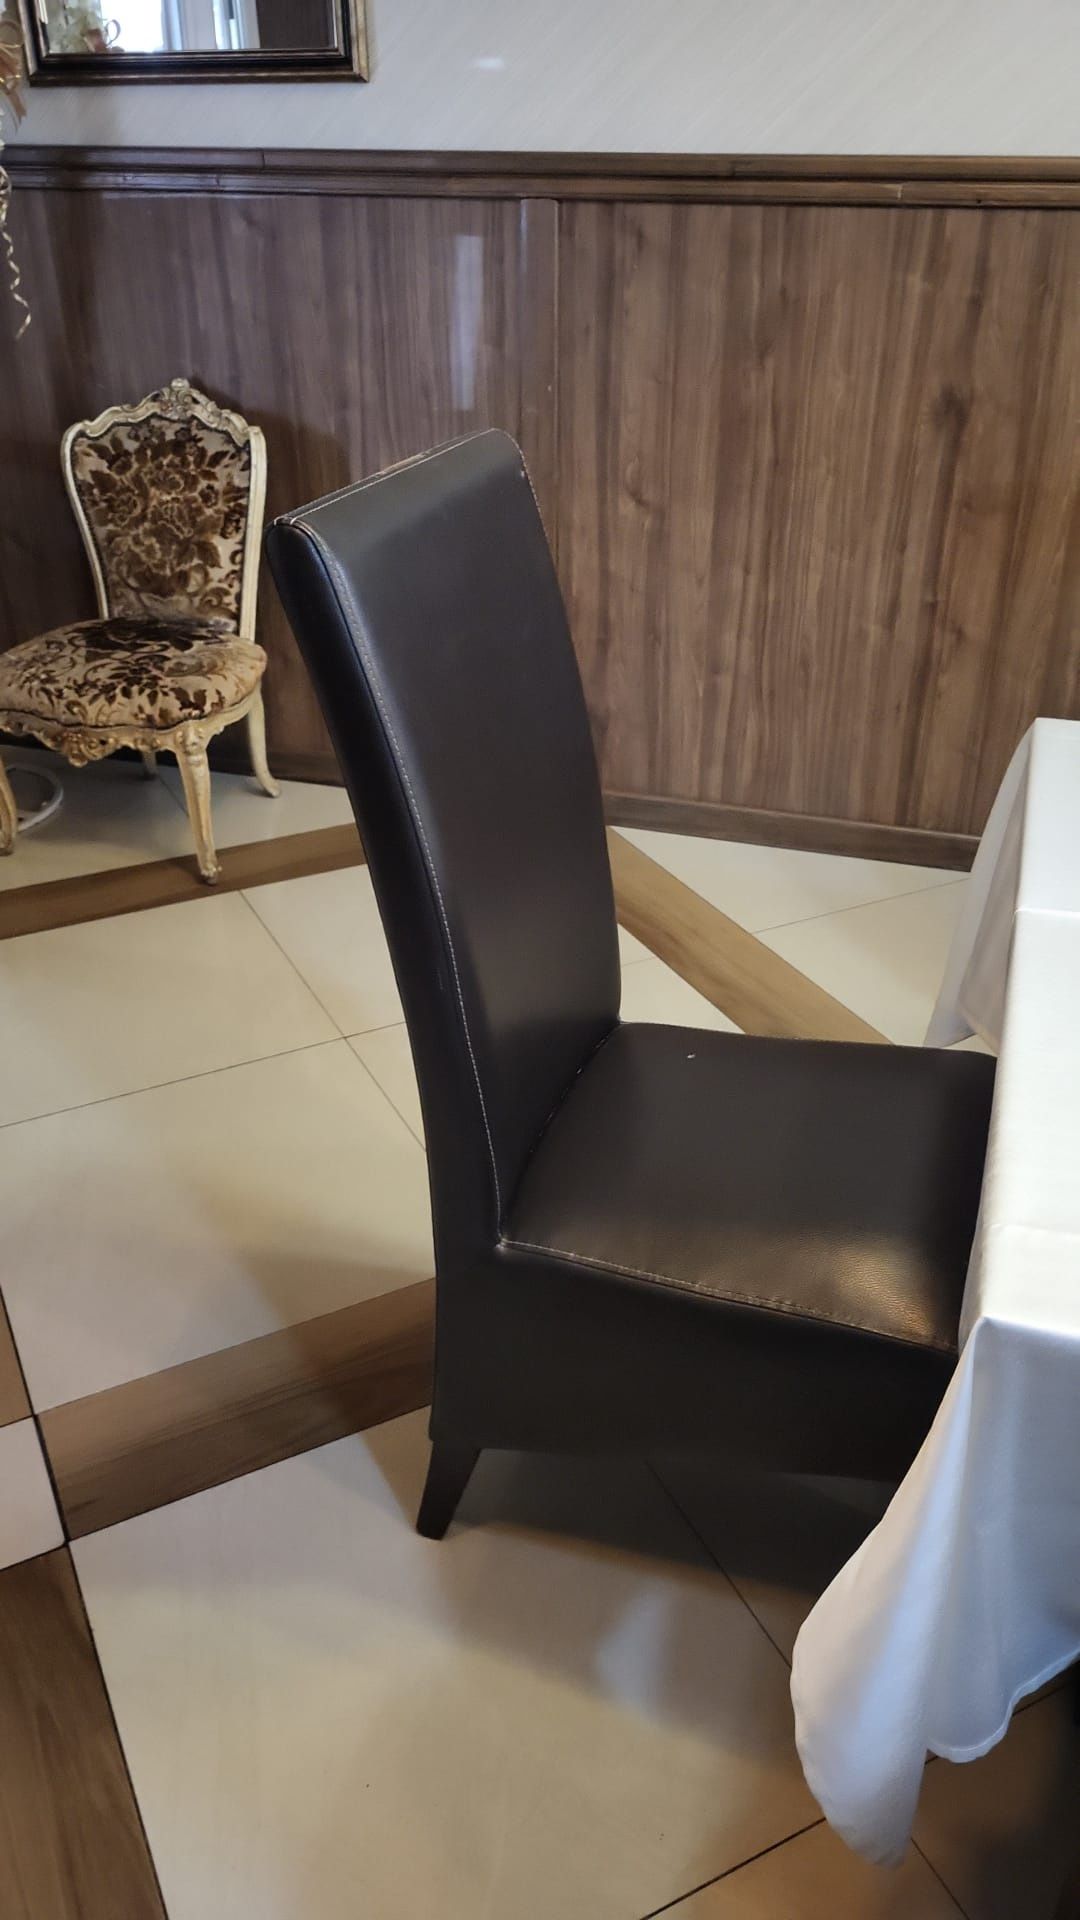 Blat masa dublat şi scaune